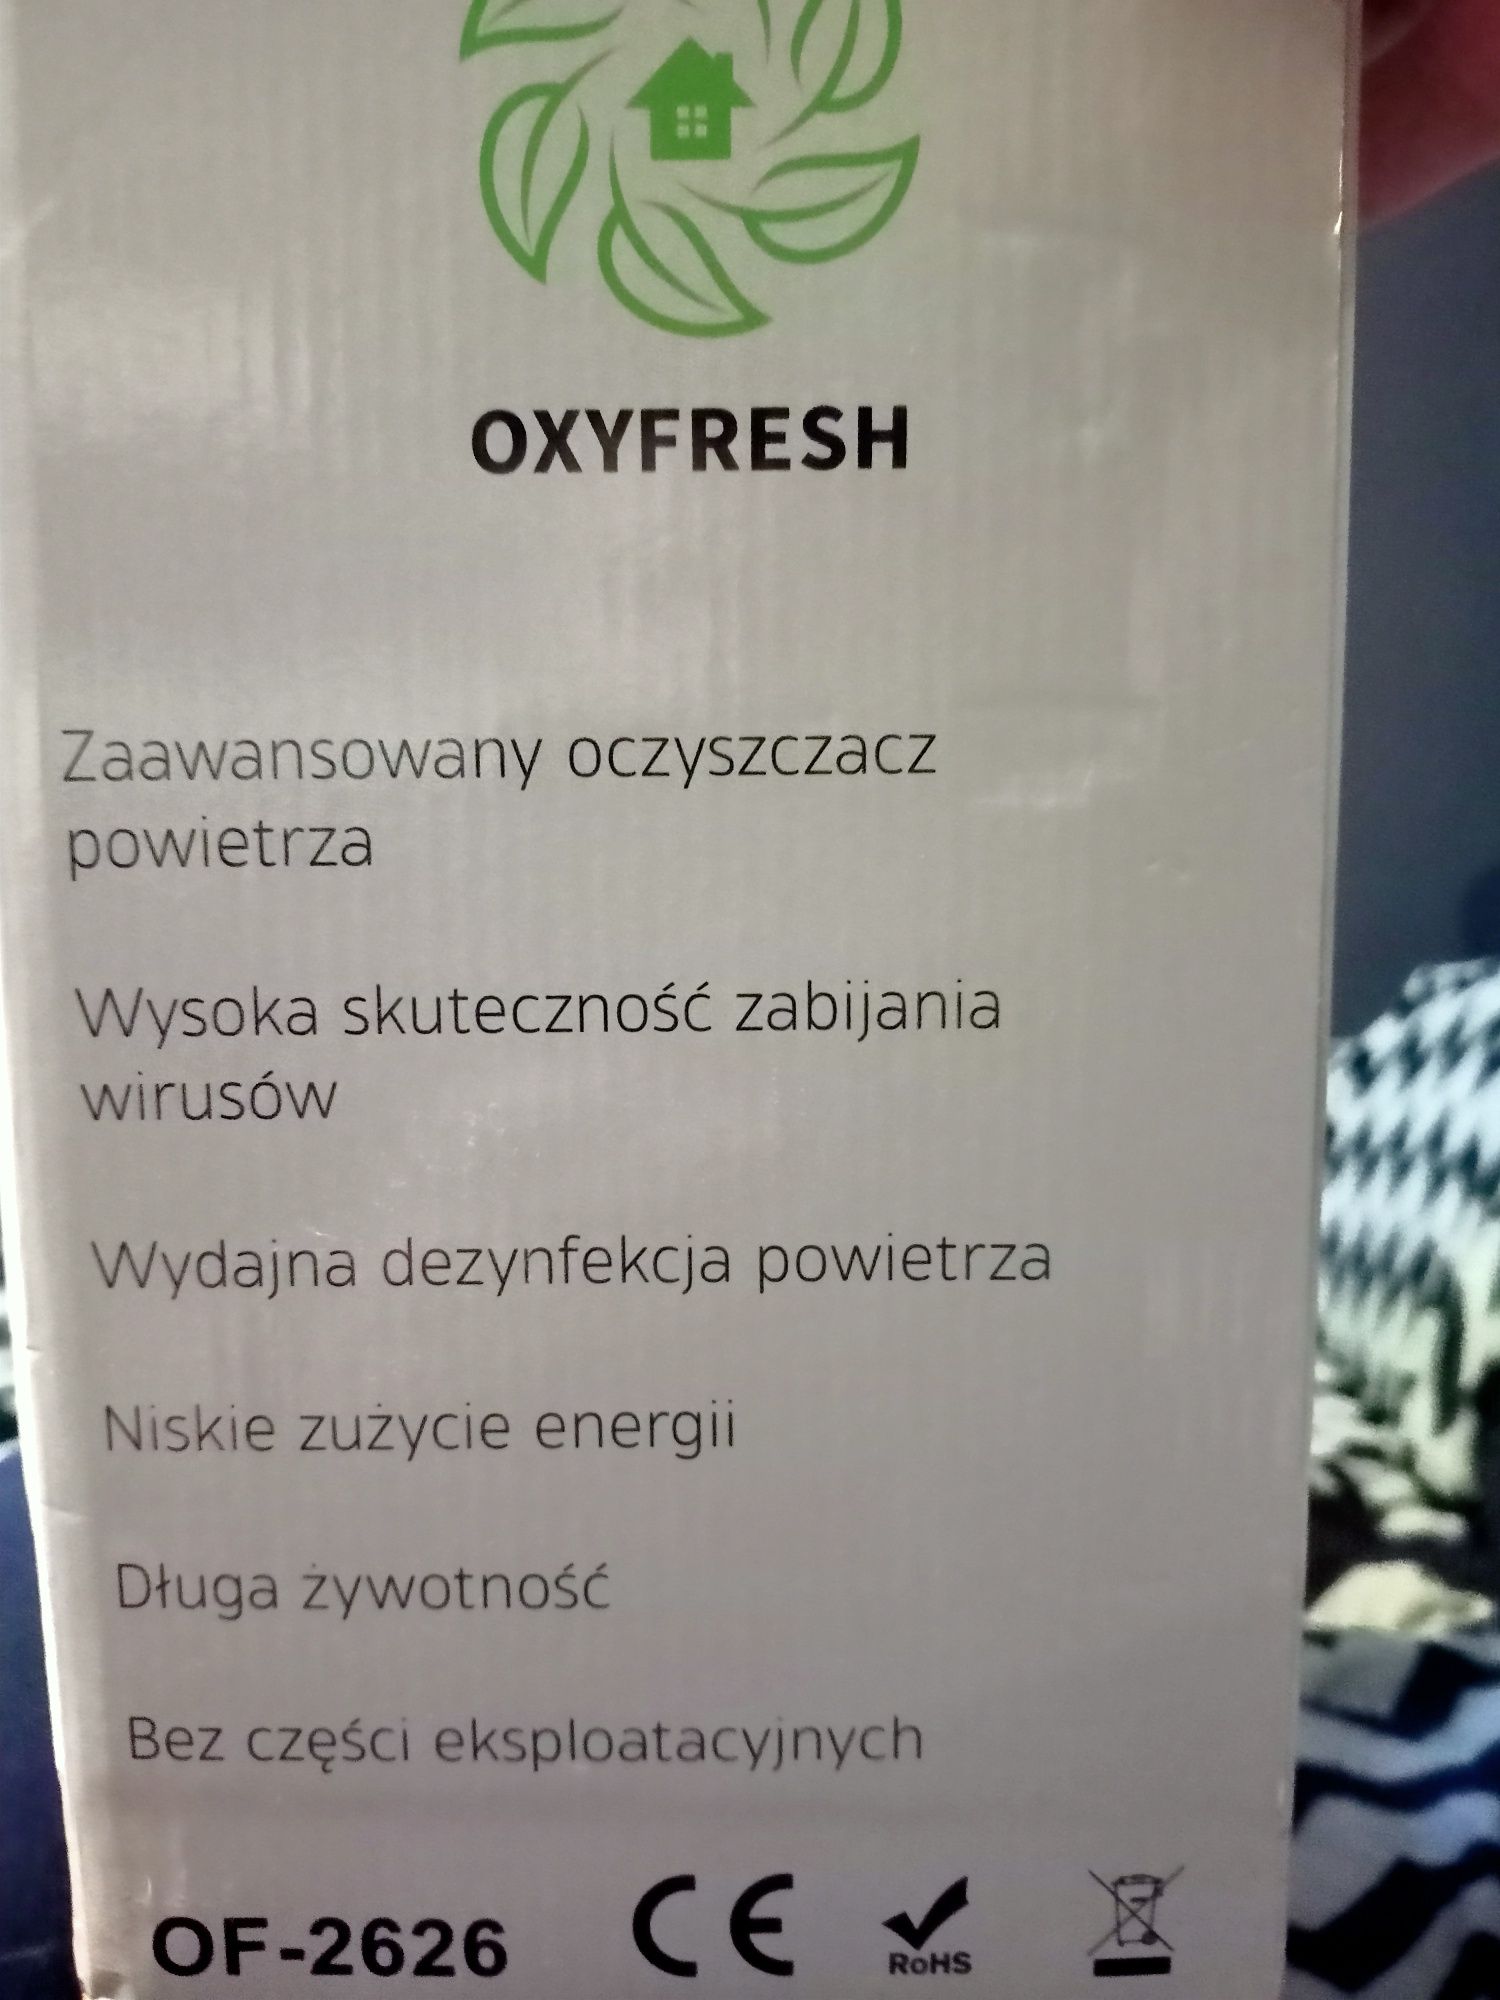 Inteligentny automat ozonu oxyfresh of- 2626